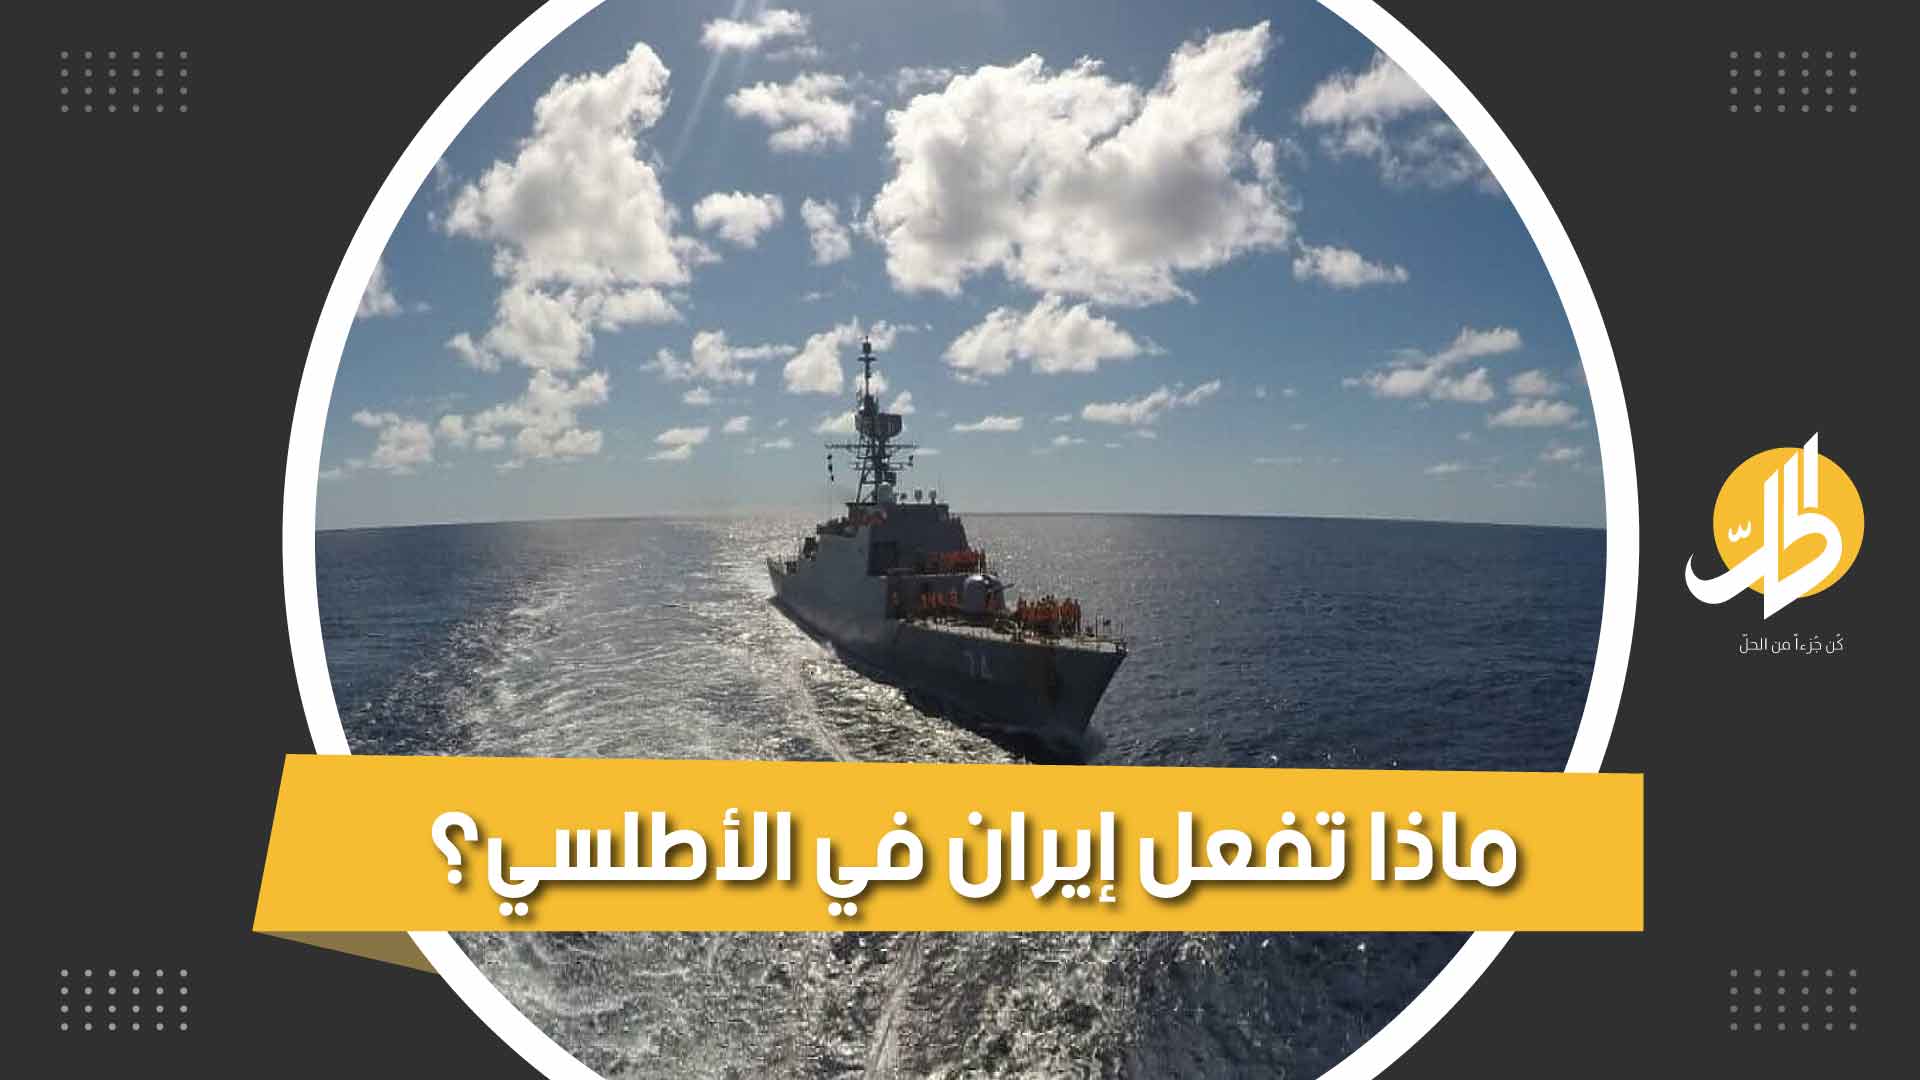 سفن إيرانية تعبر نحو المحيط الأطلسي.. فإلى أين تتجه؟